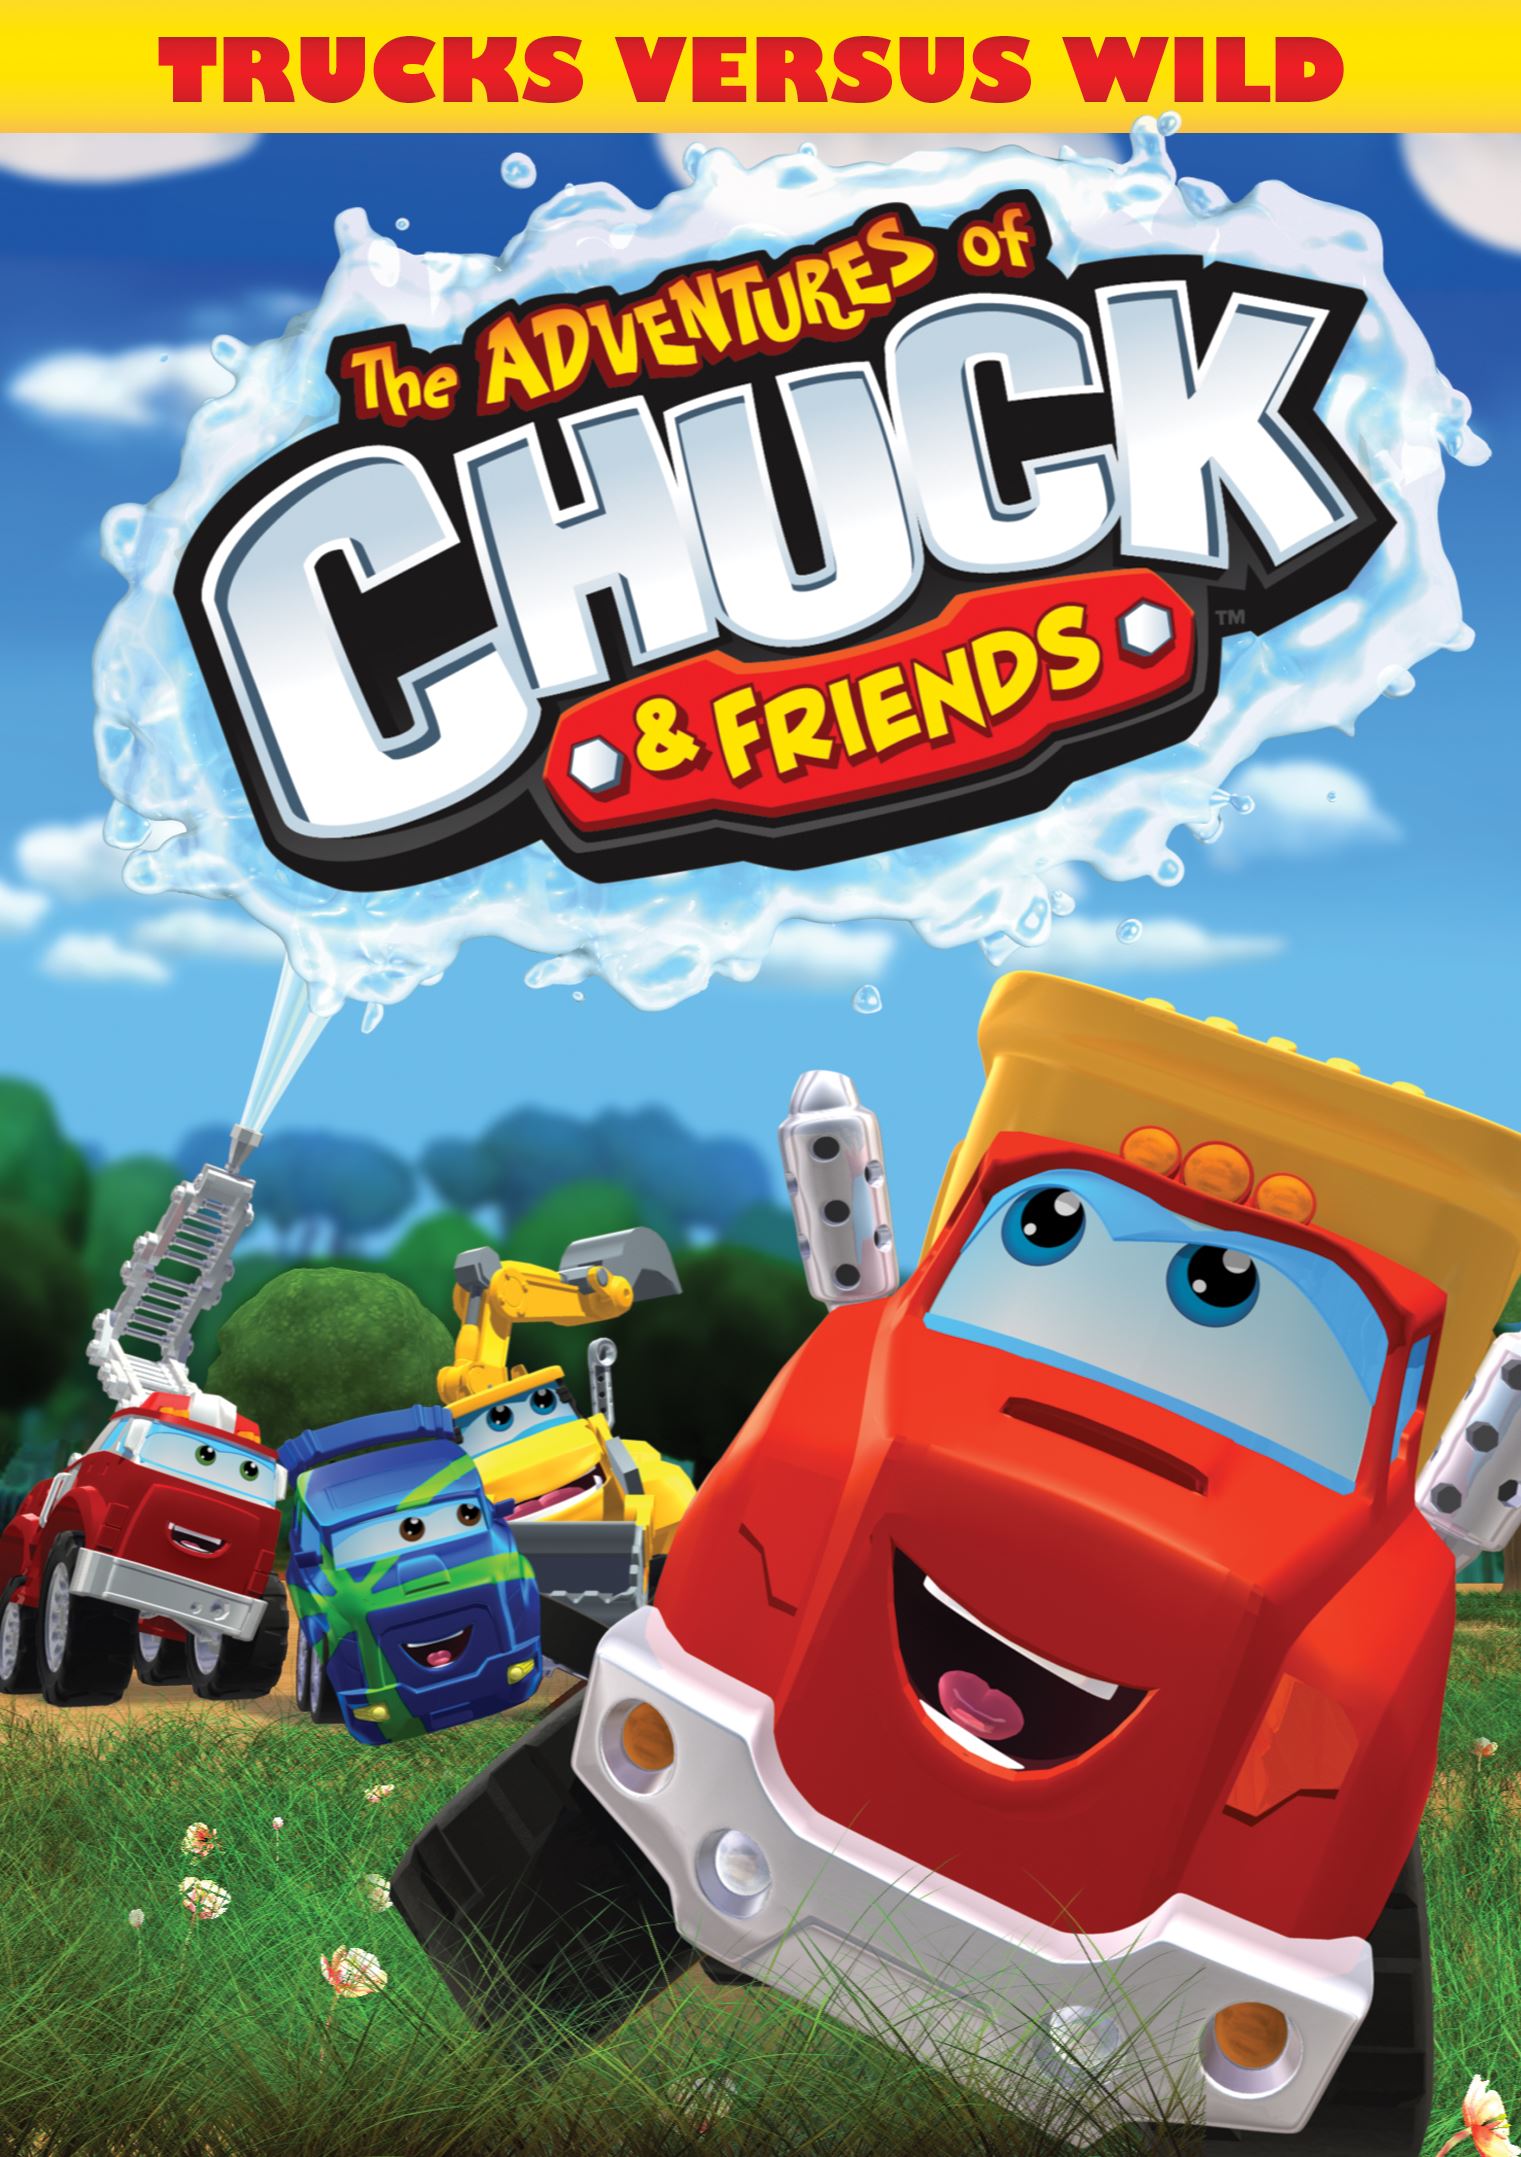 Best Buy: The Adventures of Chuck & Friends: Trucks Versus Wild [DVD]